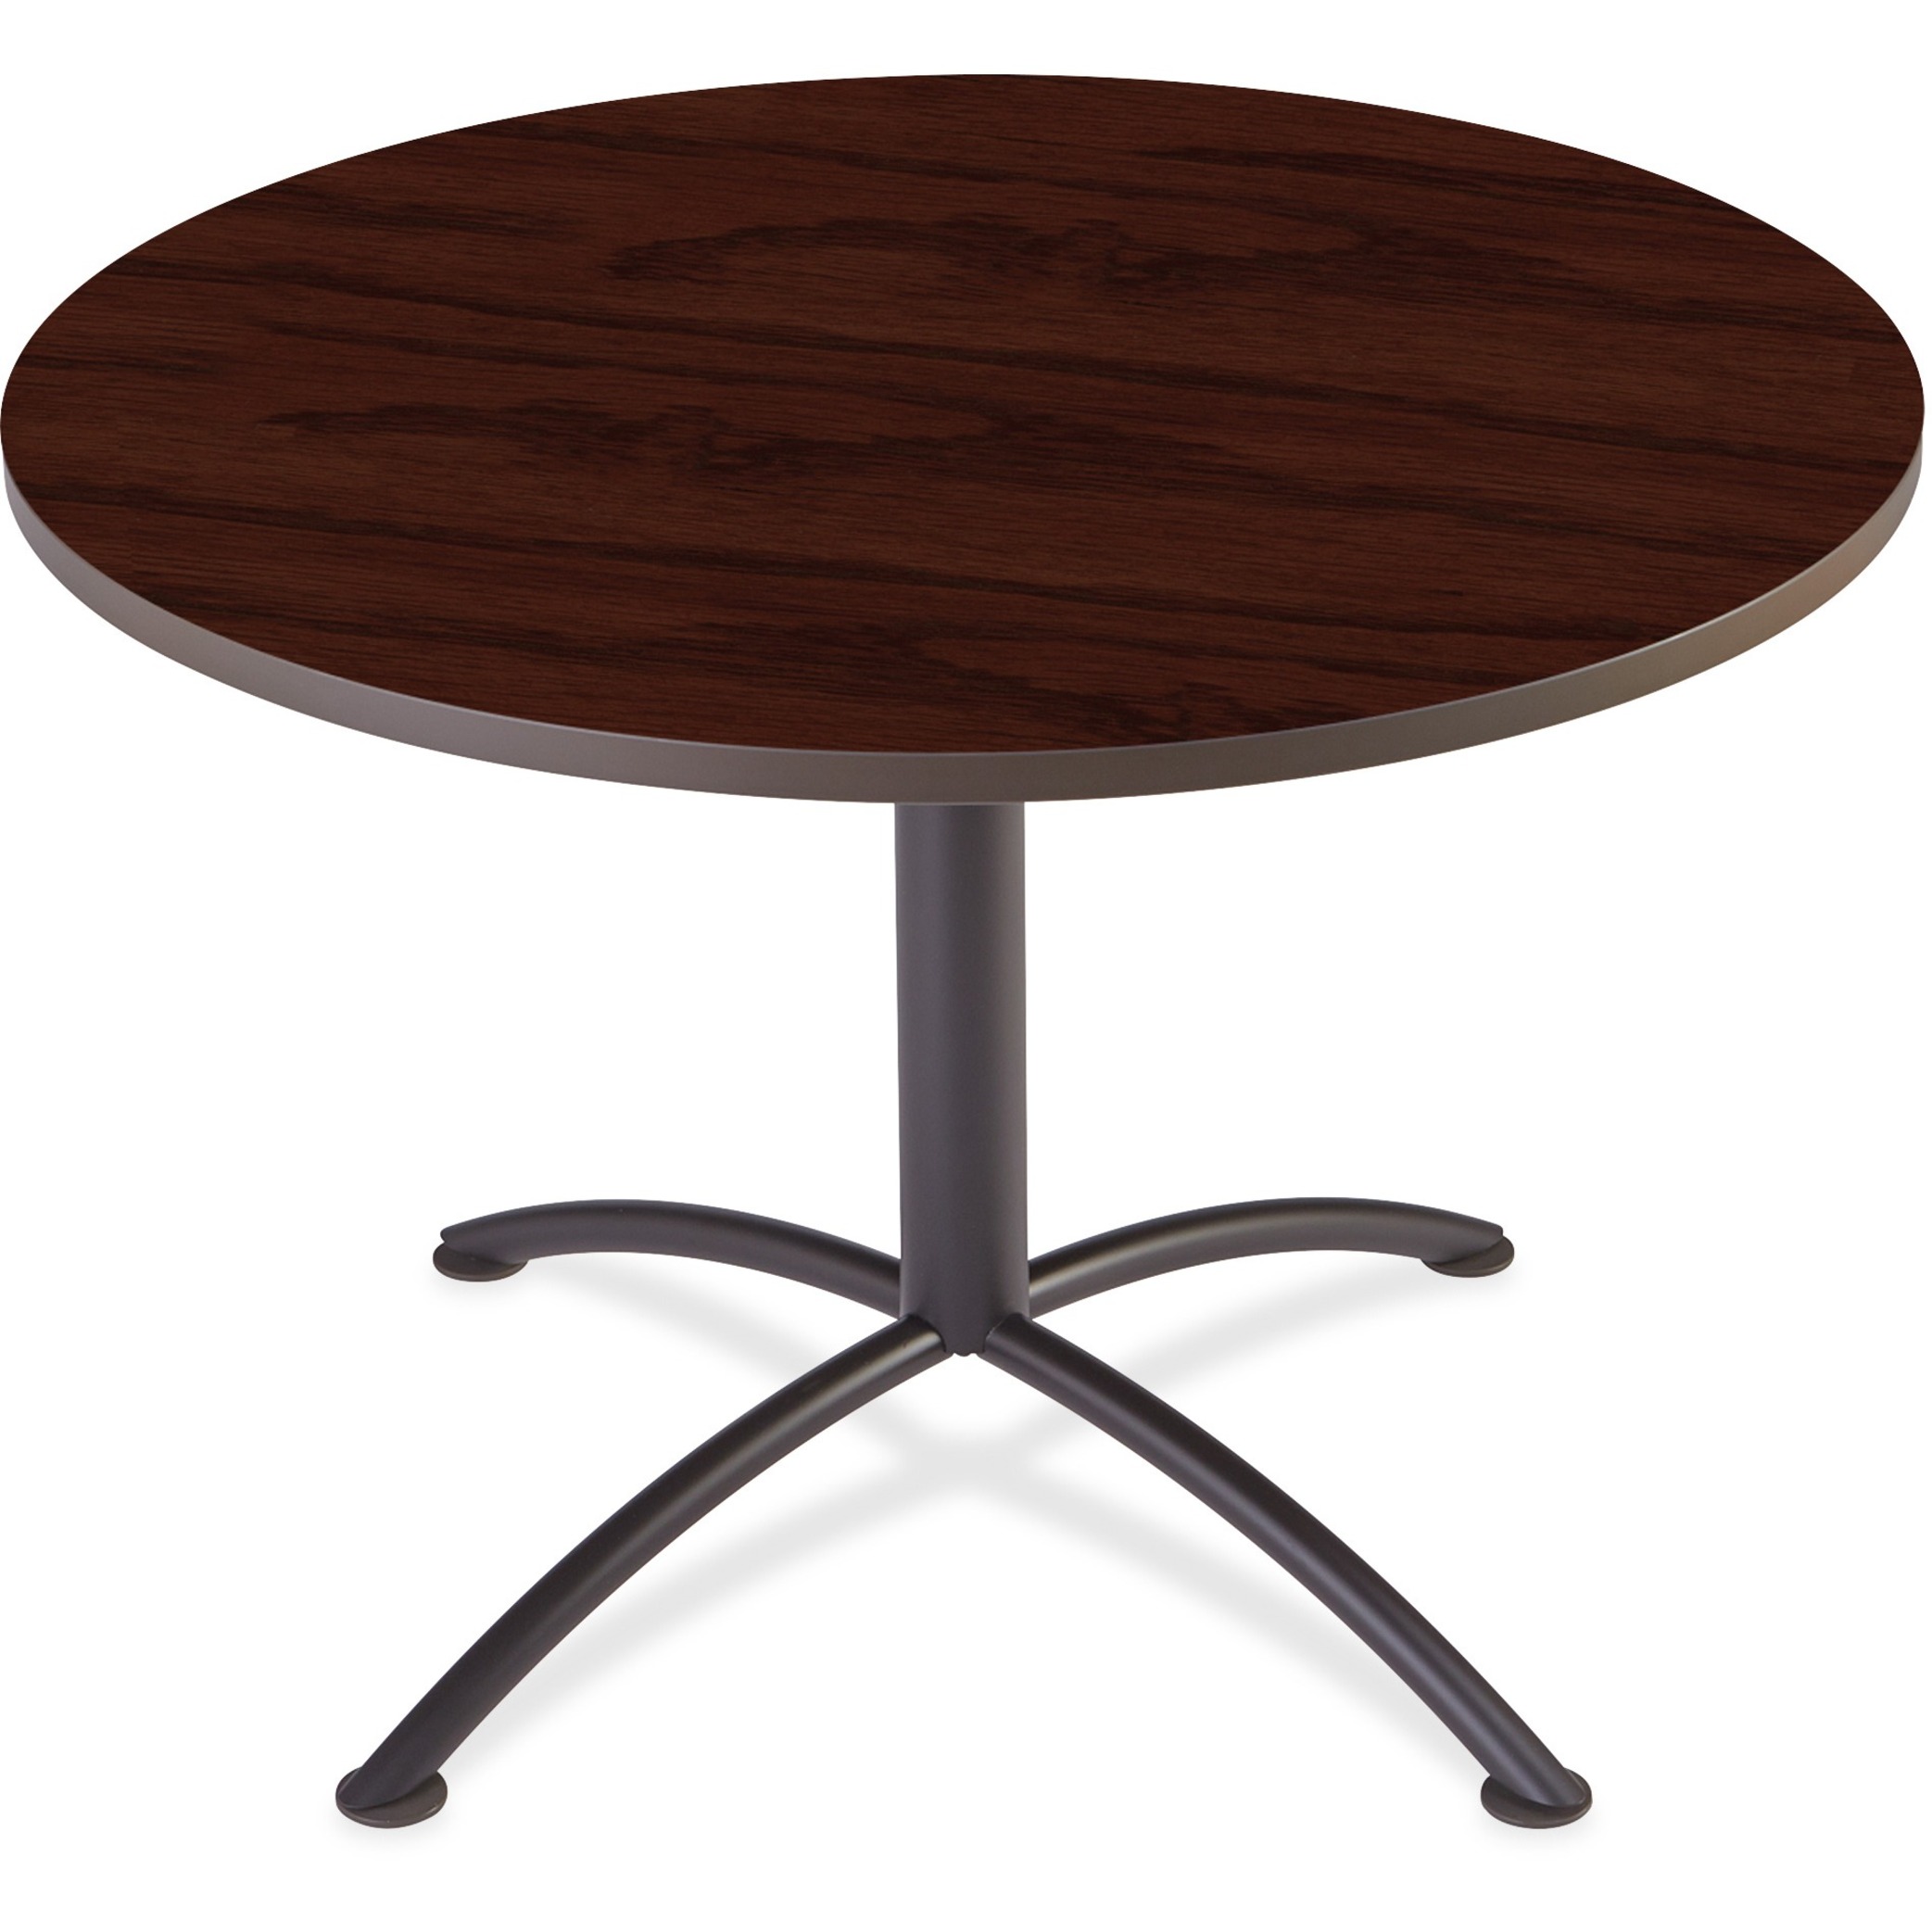 Iceberg Enterprises Iland Table, Contour, Round Seated Style, 42" X 29", Mahogany/black - image 1 of 1